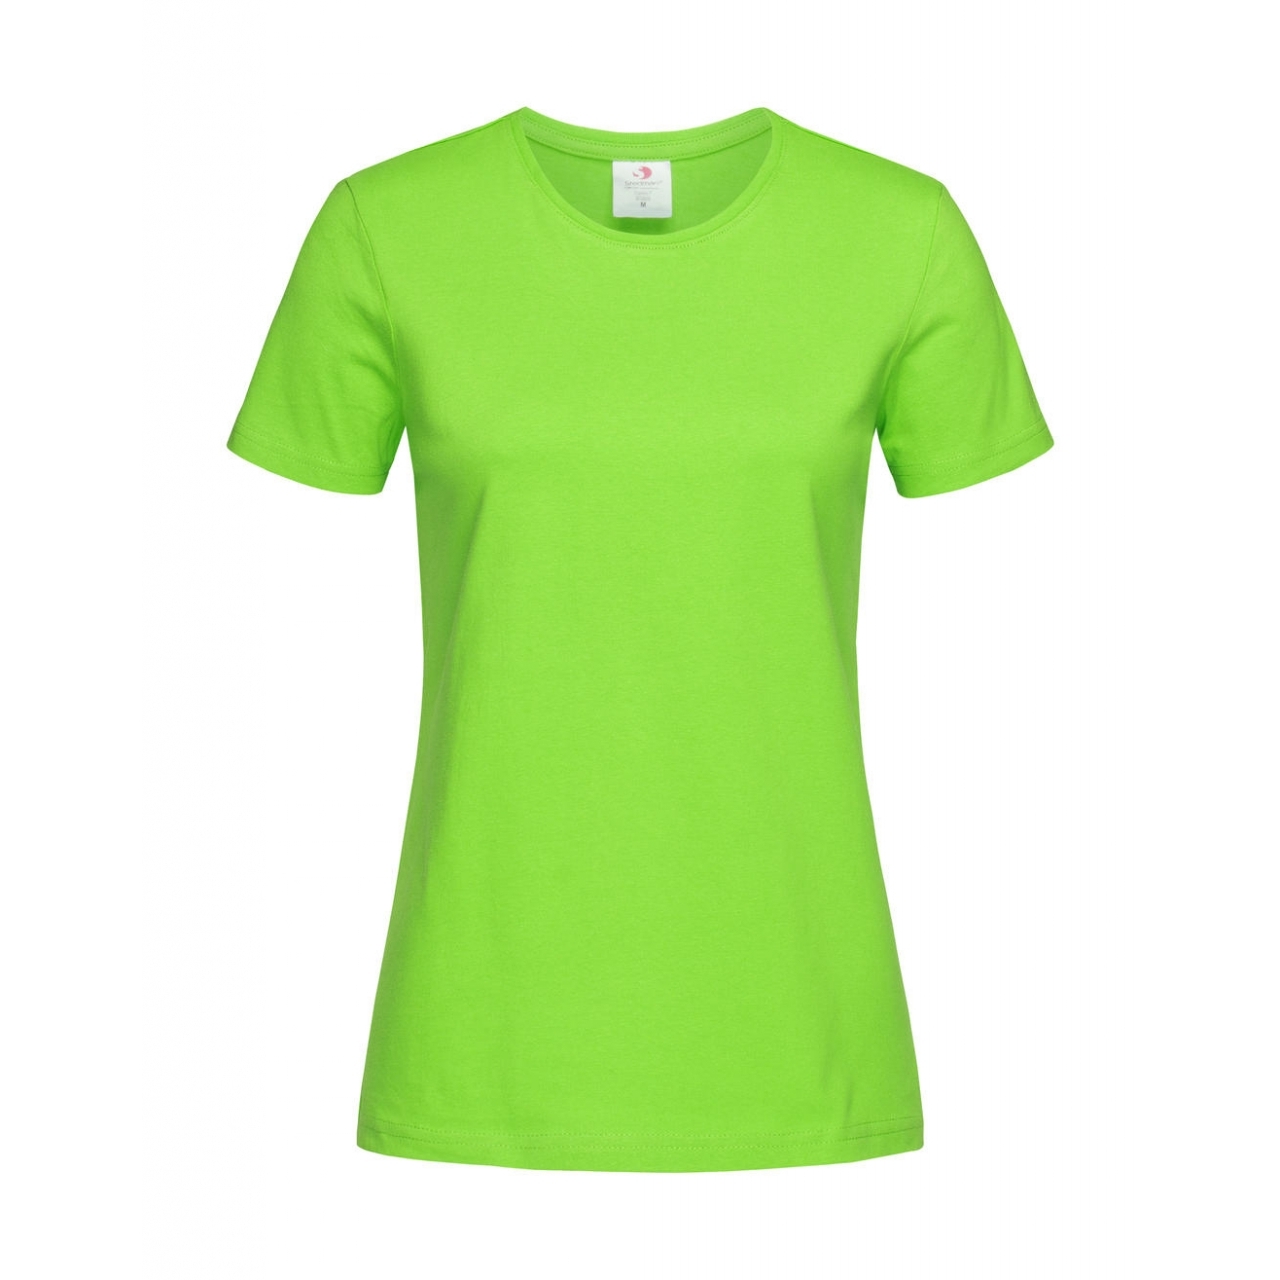 Tričko dámské Stedman Fitted s kulatým výstřihem - světle zelené, XS